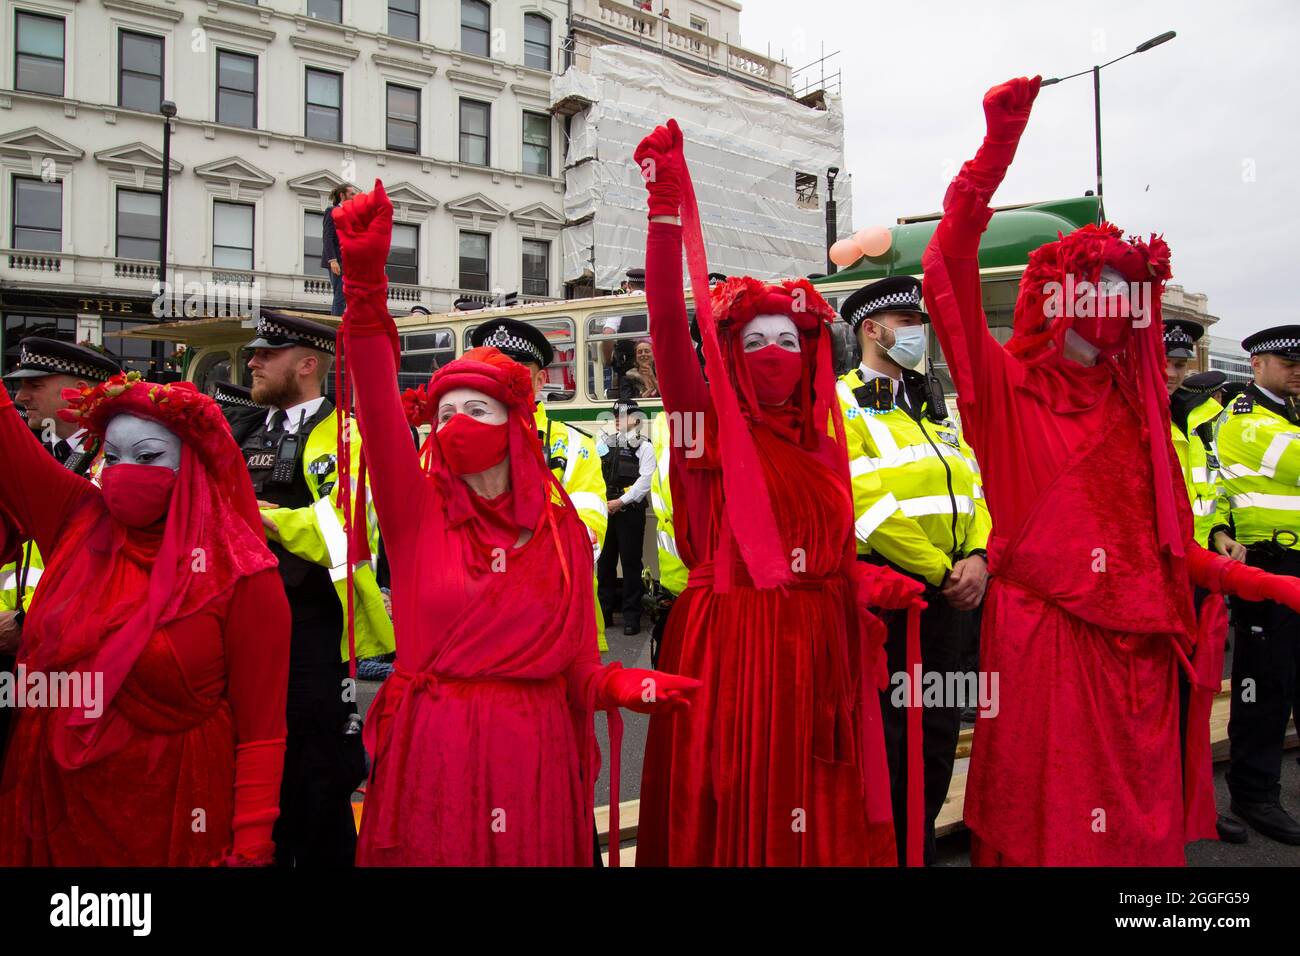 Brigade rouge, extinction activistes de la rébellion Londres 31 août 2021. Des manifestants bloquent le London Bridge avec un bus dans le cadre de la XR, manifestations à Londres Banque D'Images